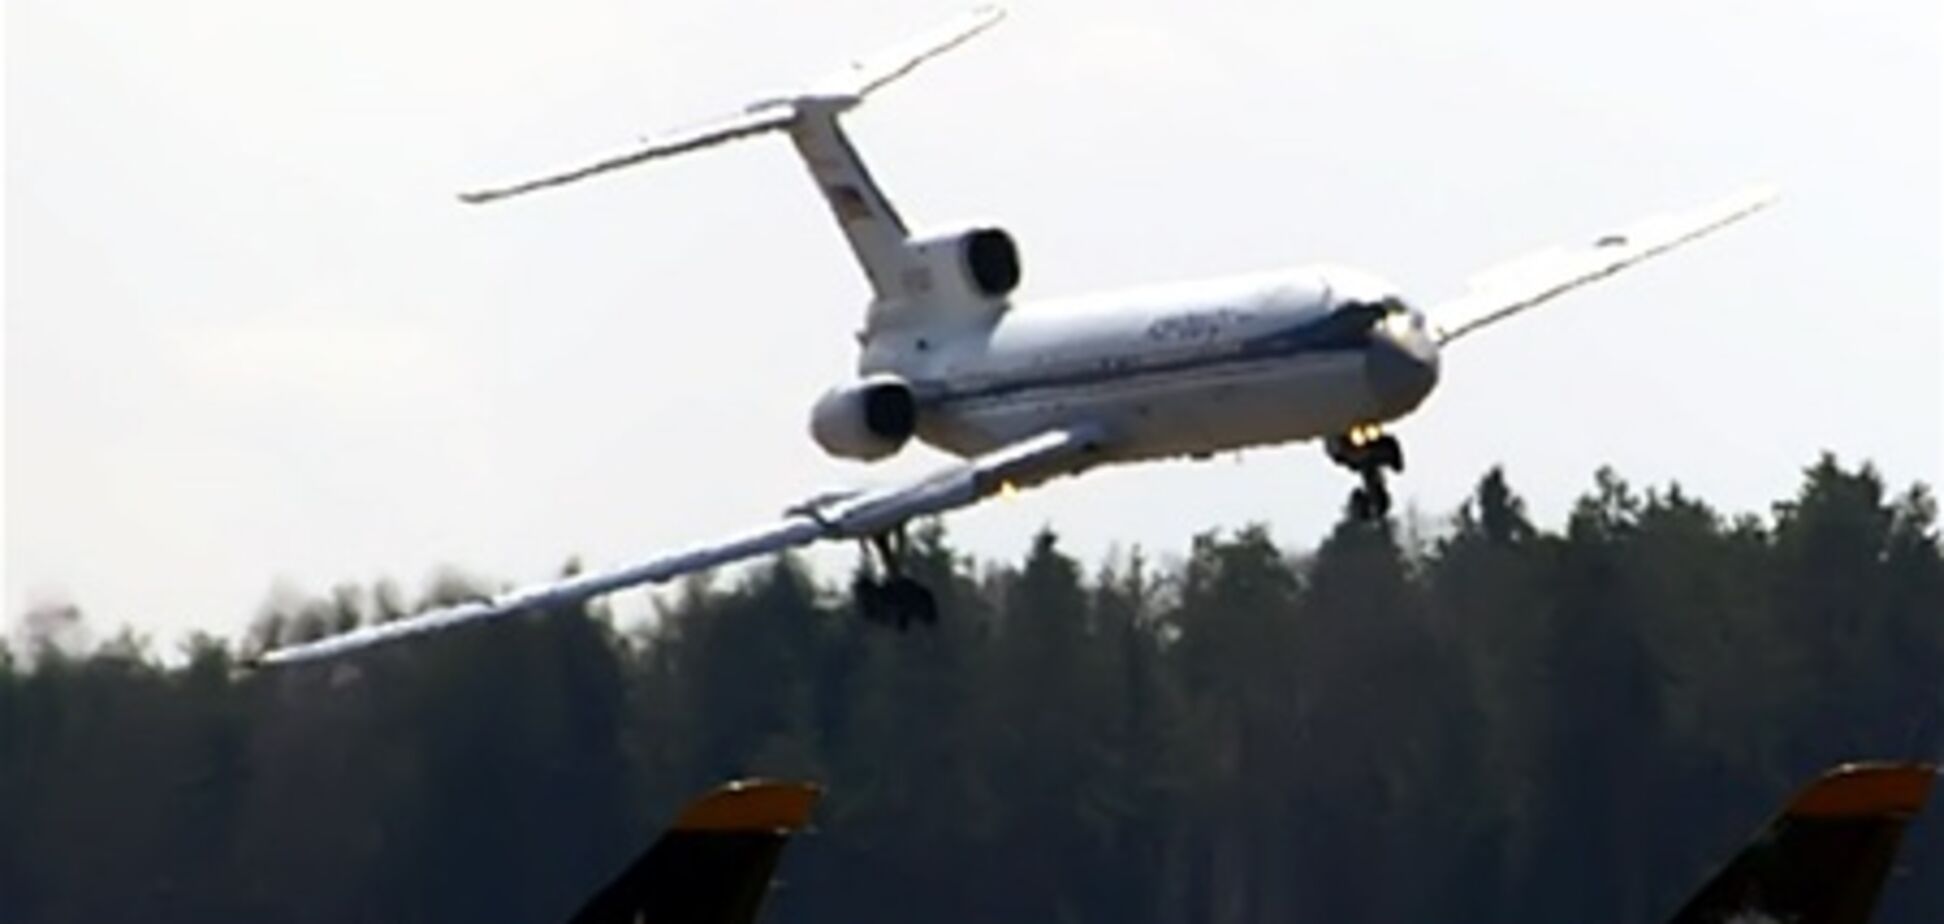 Предотвращена серьезная авиакатастрофа самолета Ту-154